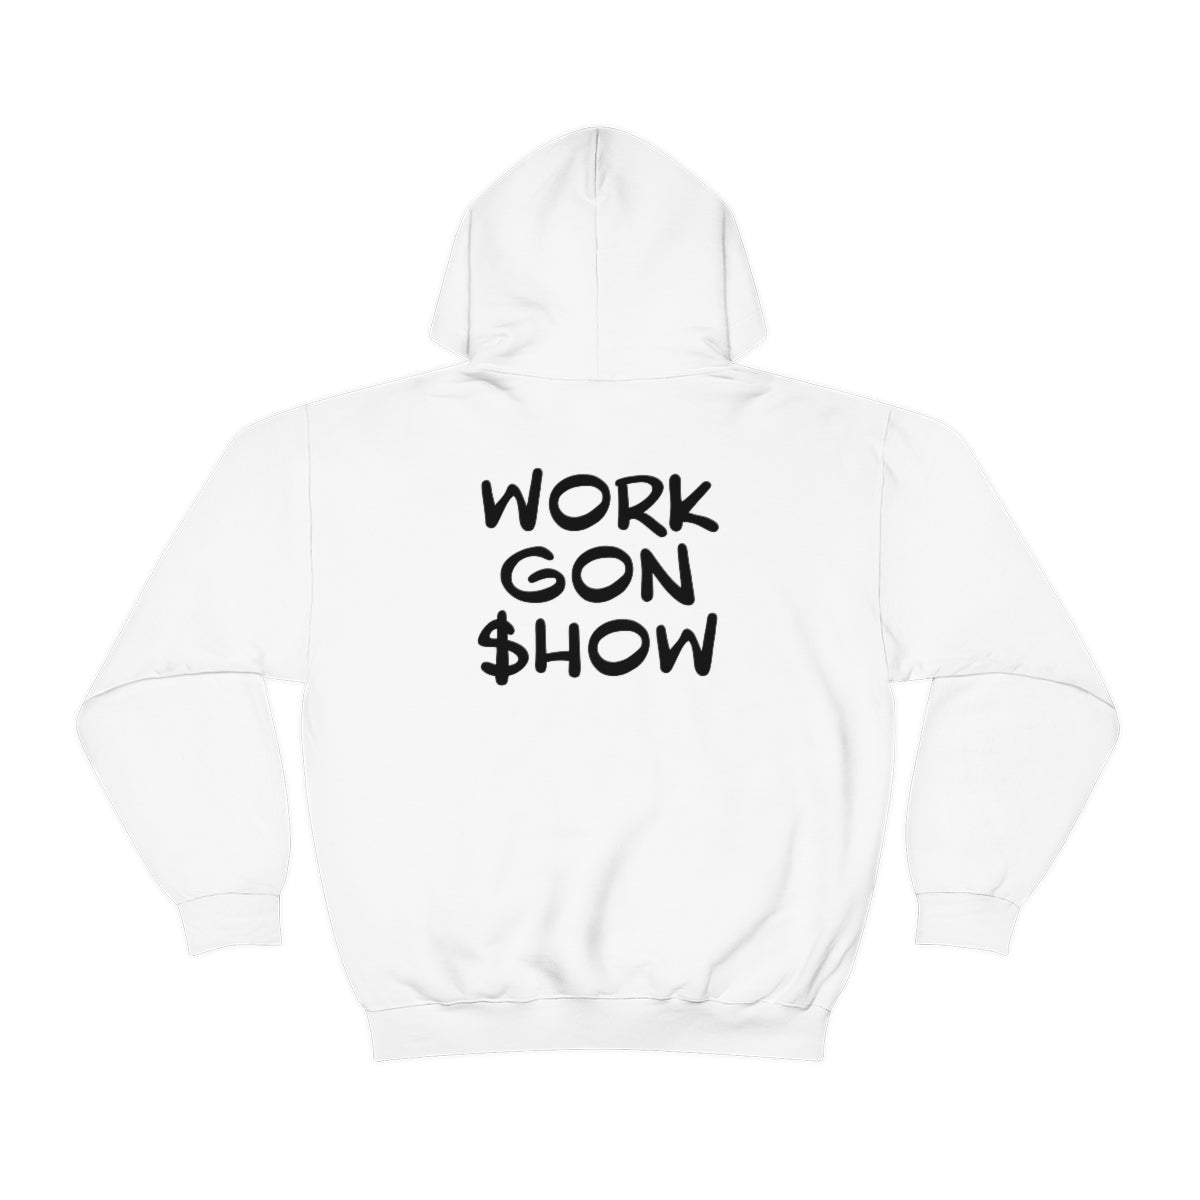 Nasan Ayala: Work Gon $how Hoodie (Black & White)